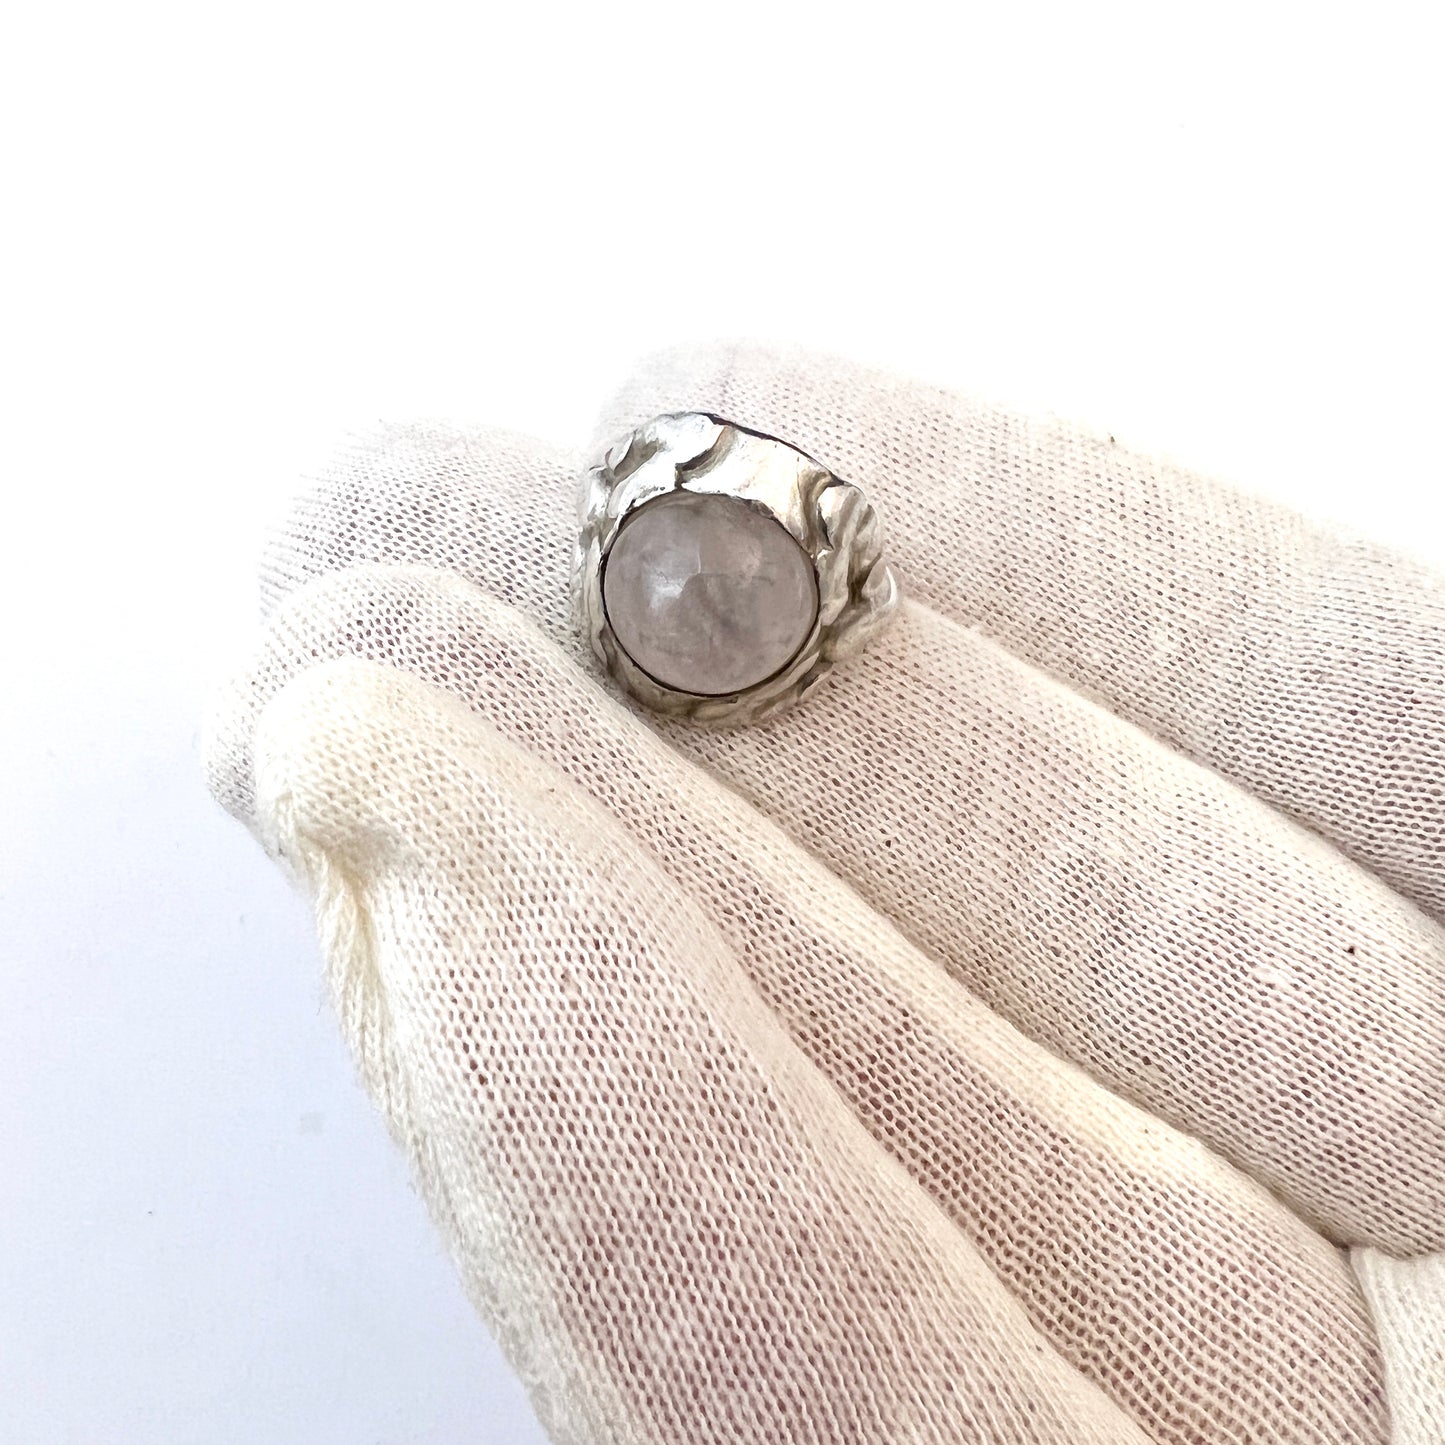 Georg Jensen, Denmark 1915-30. Sterling Silver Rose Quartz Ring. Design 11A